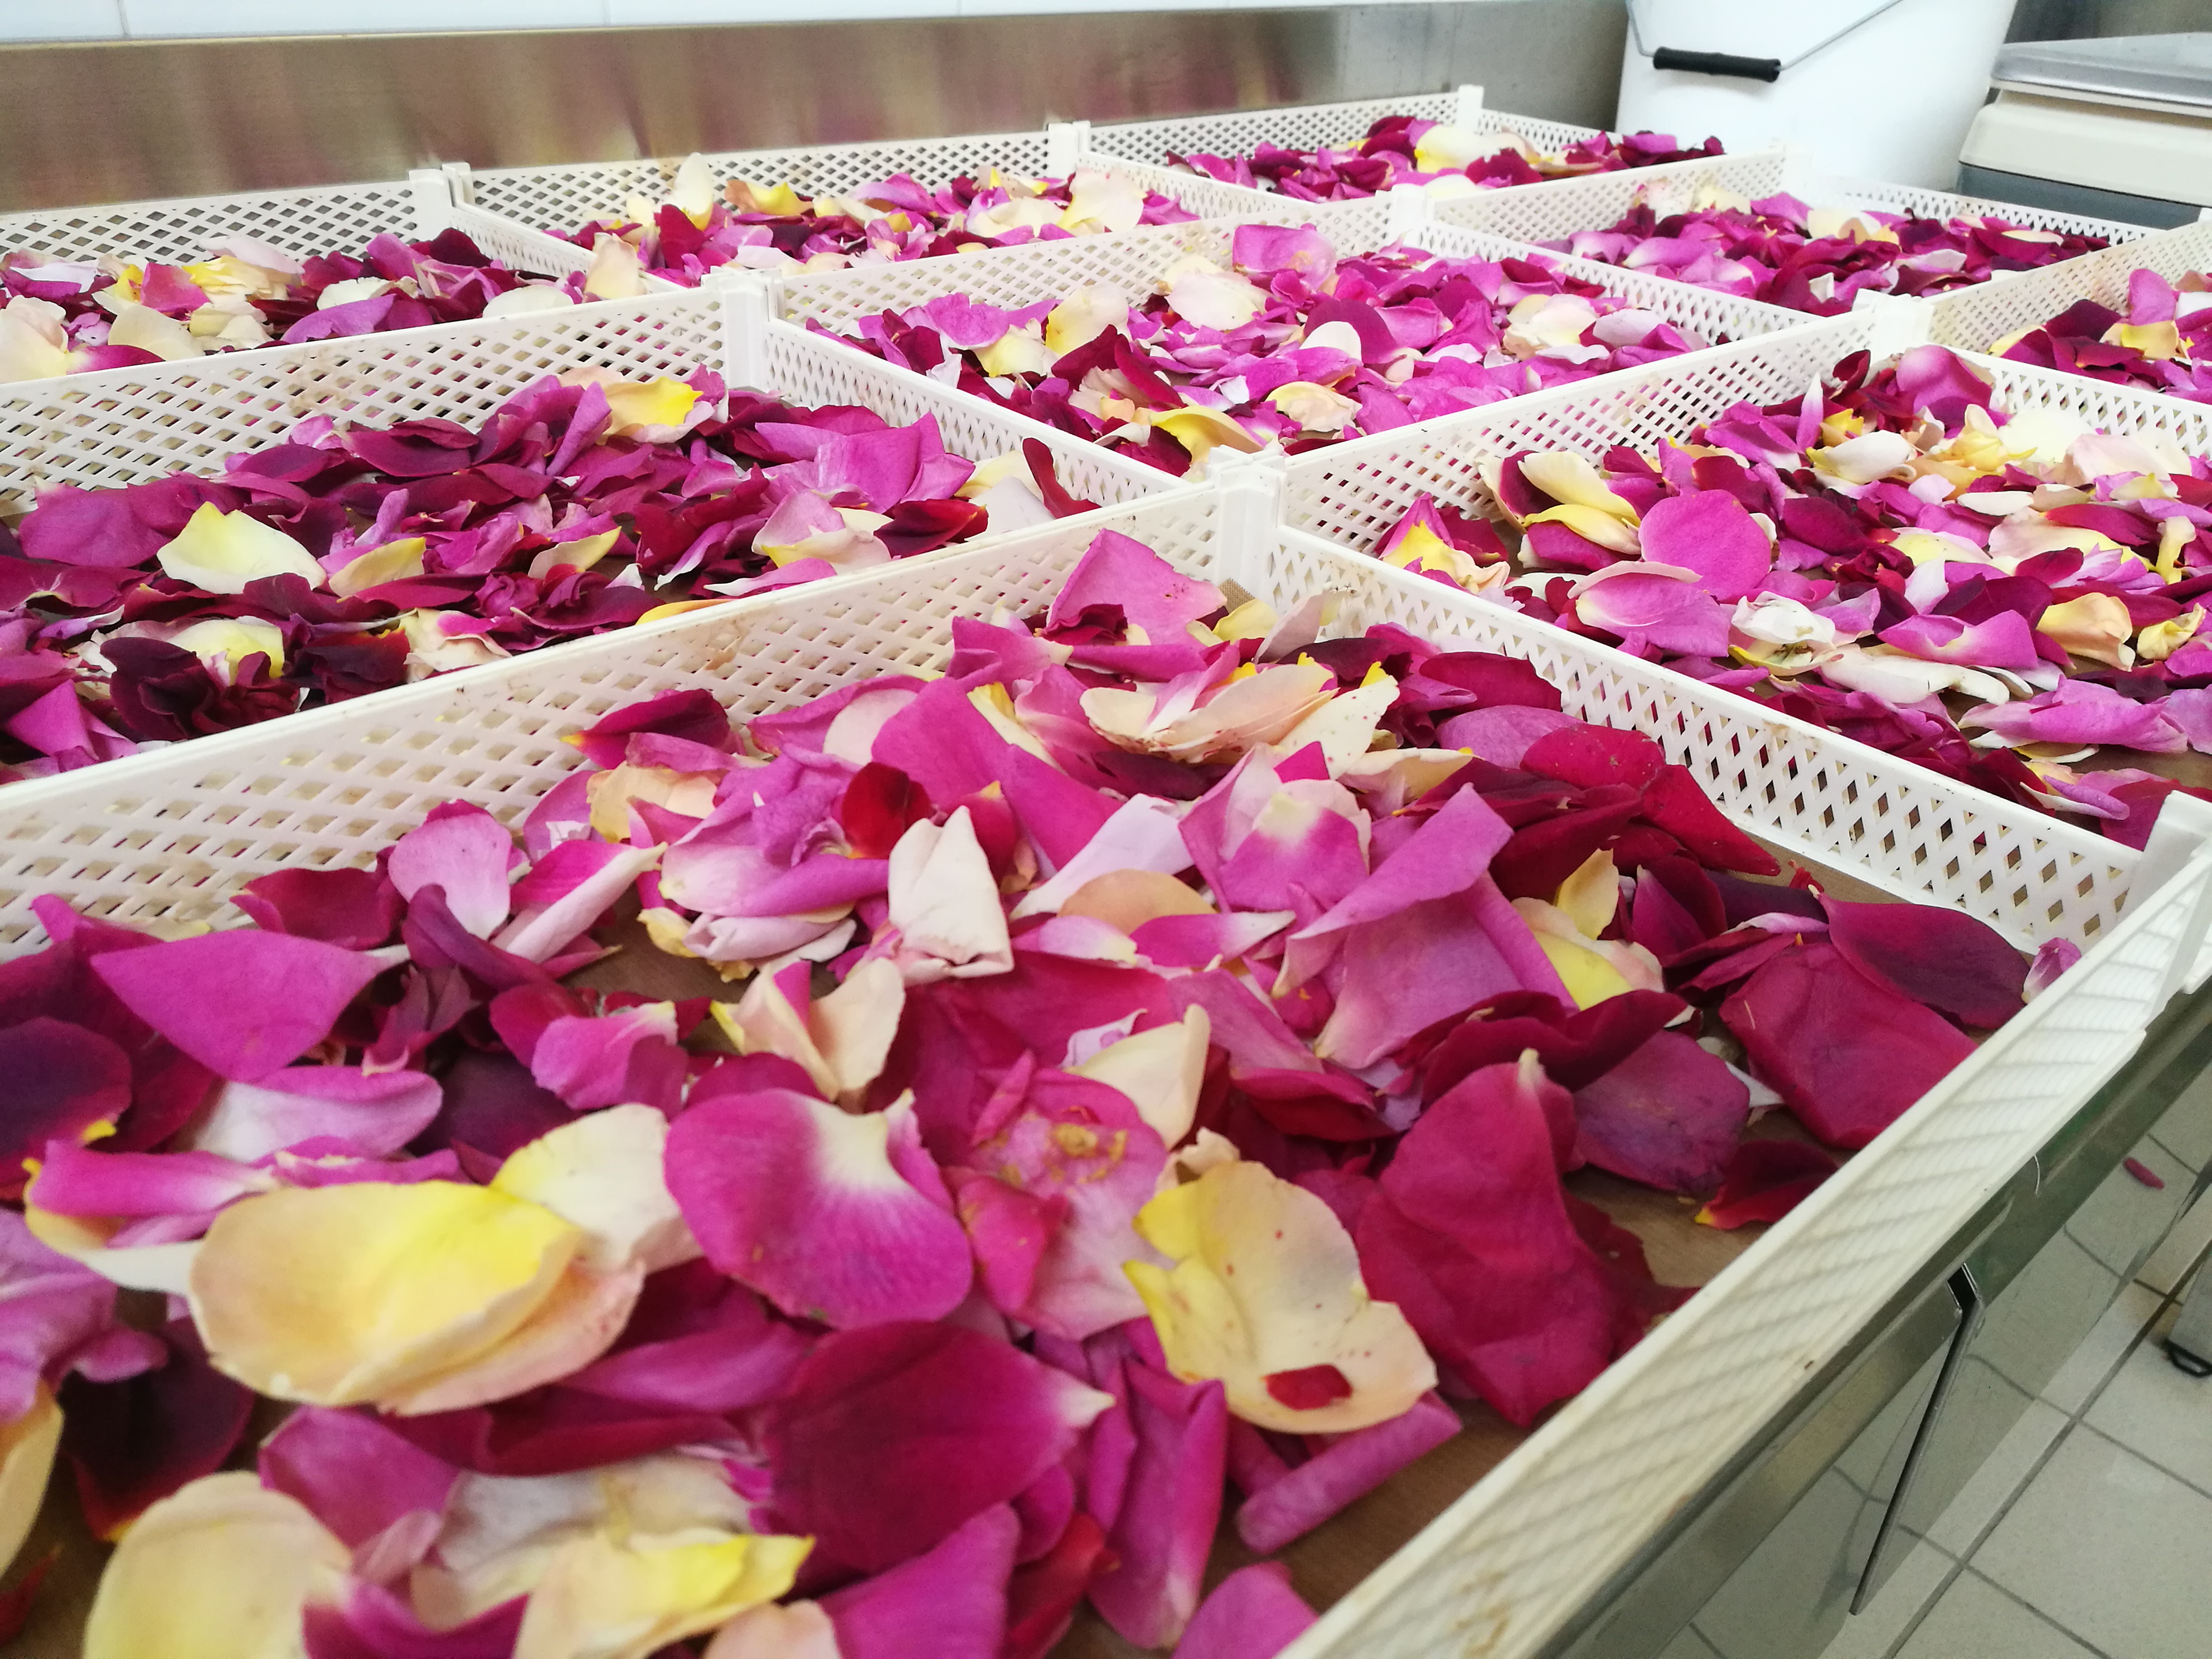 Petali di rosa essiccati di Chiara Berlenga - In cucina con Biosec